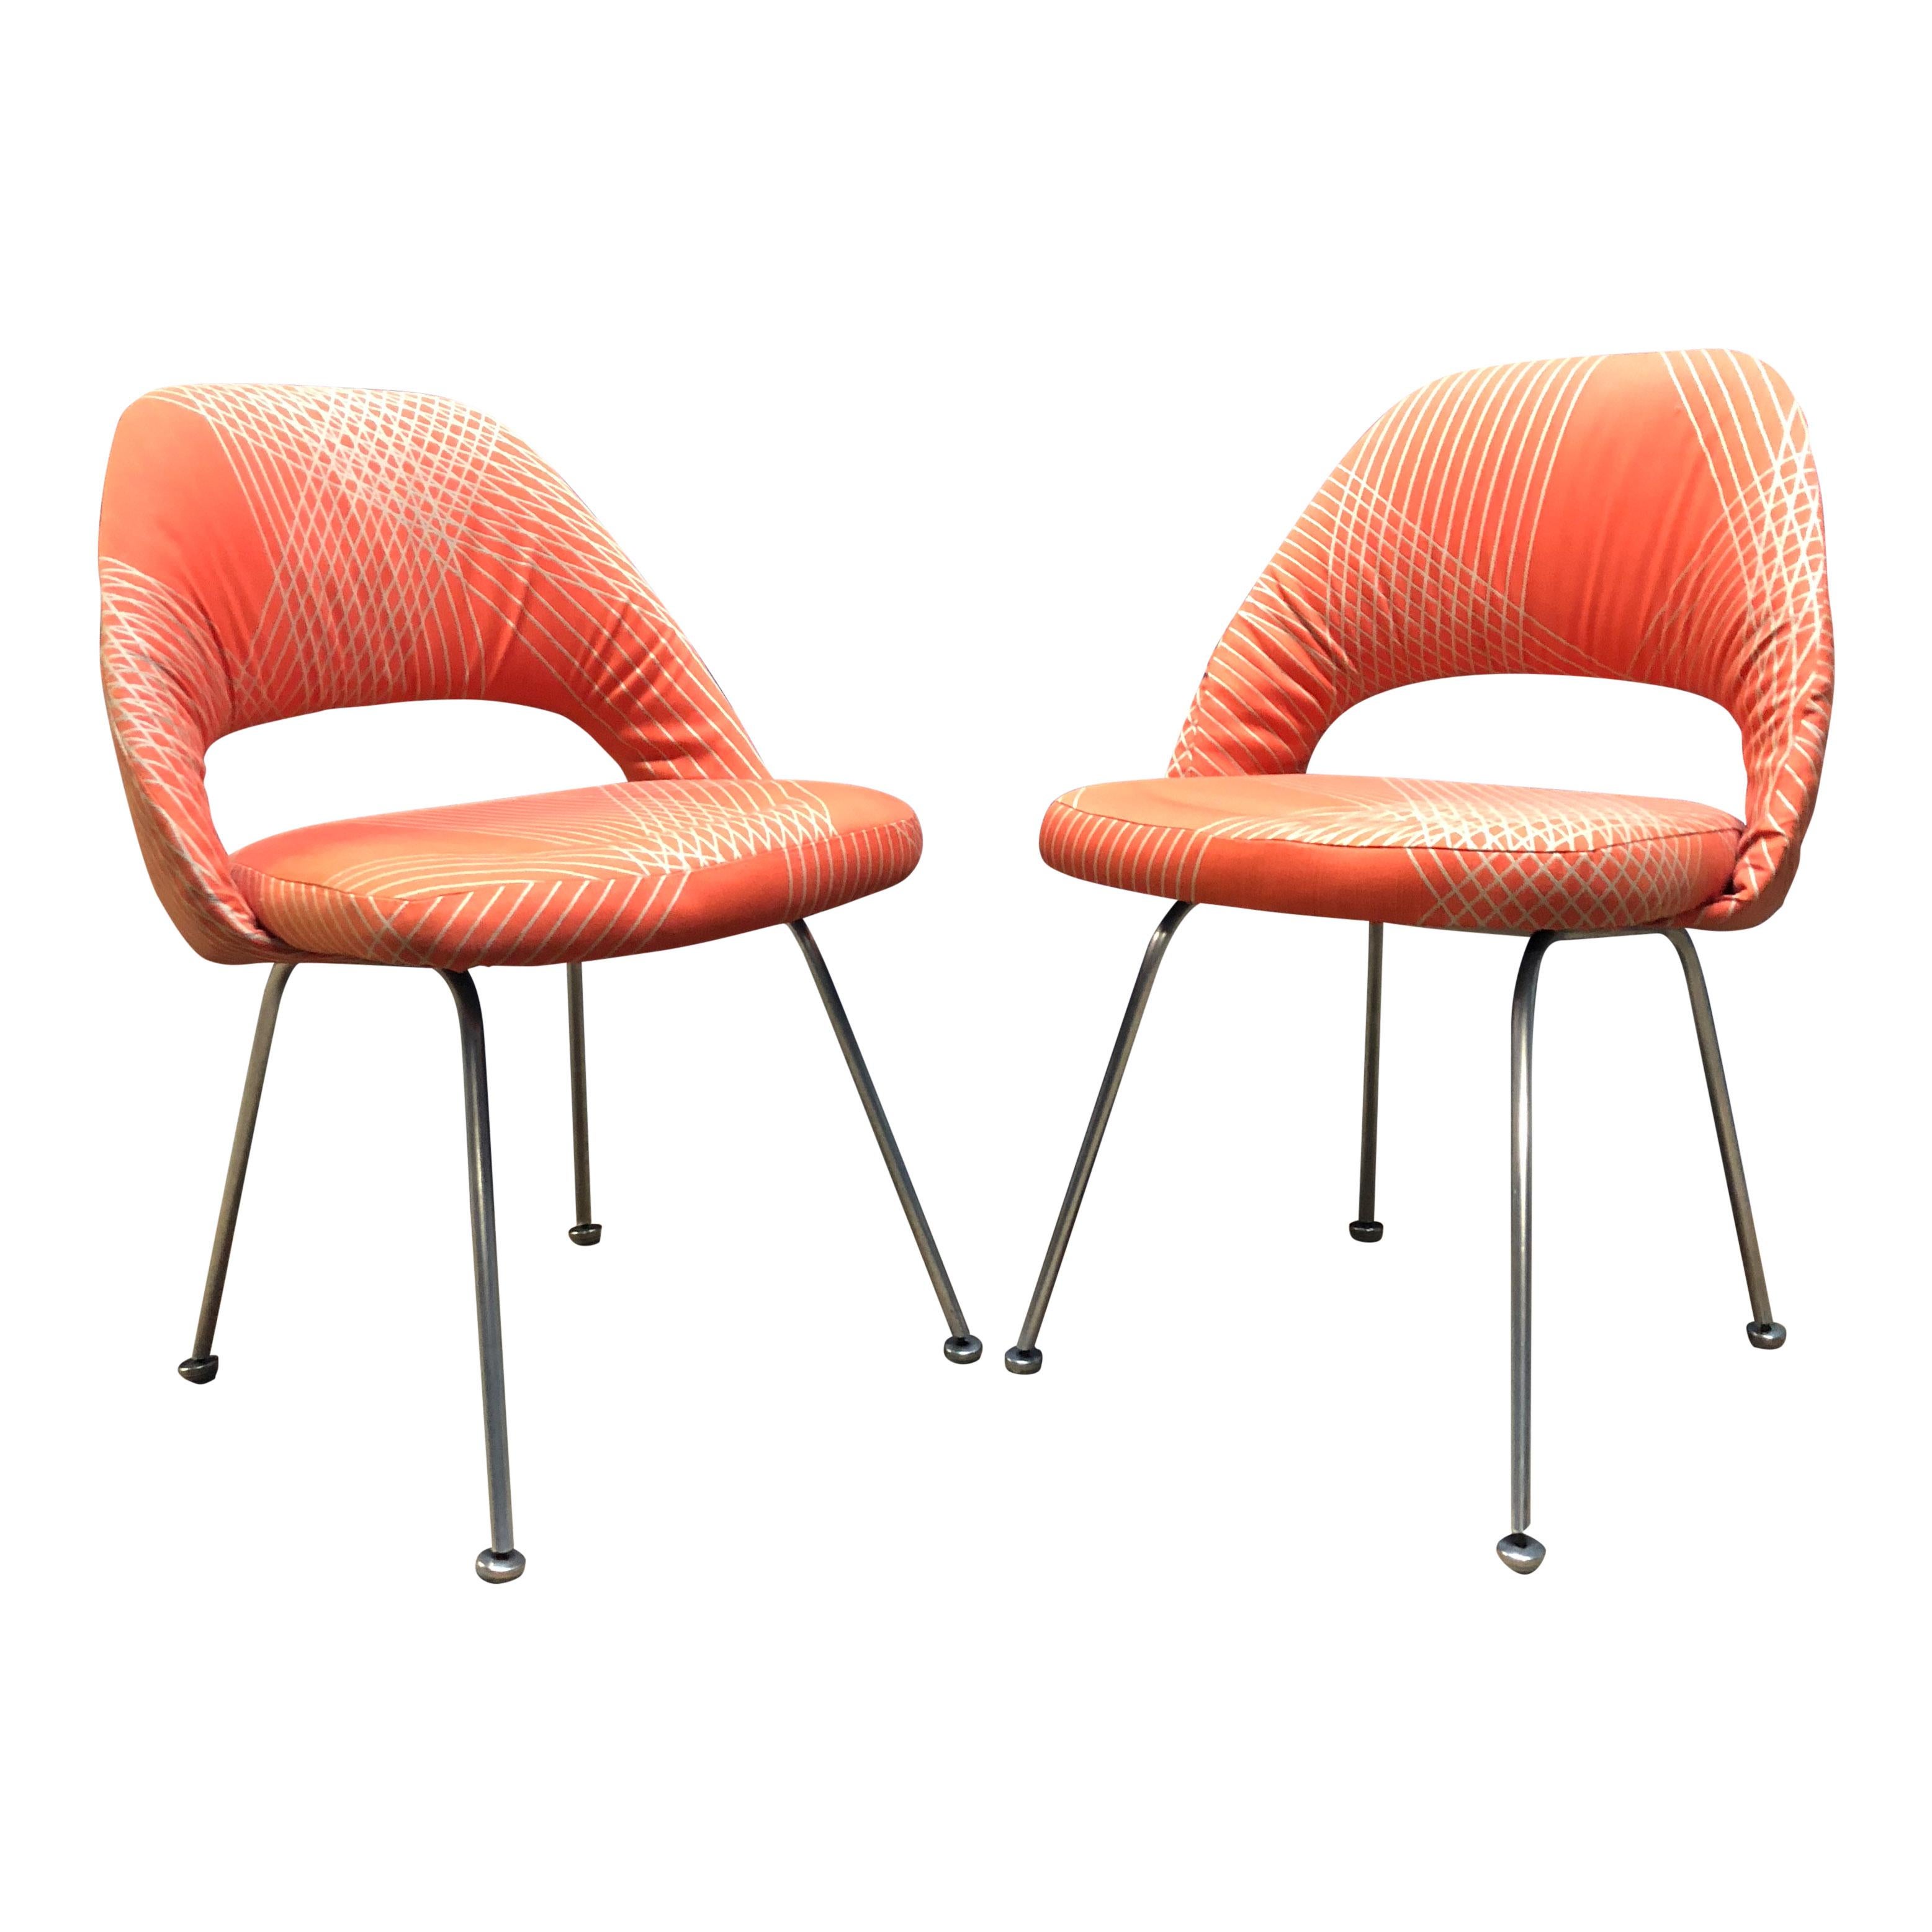 Rare Eero Saarinen for Knoll Chairs on Aluminum Legs